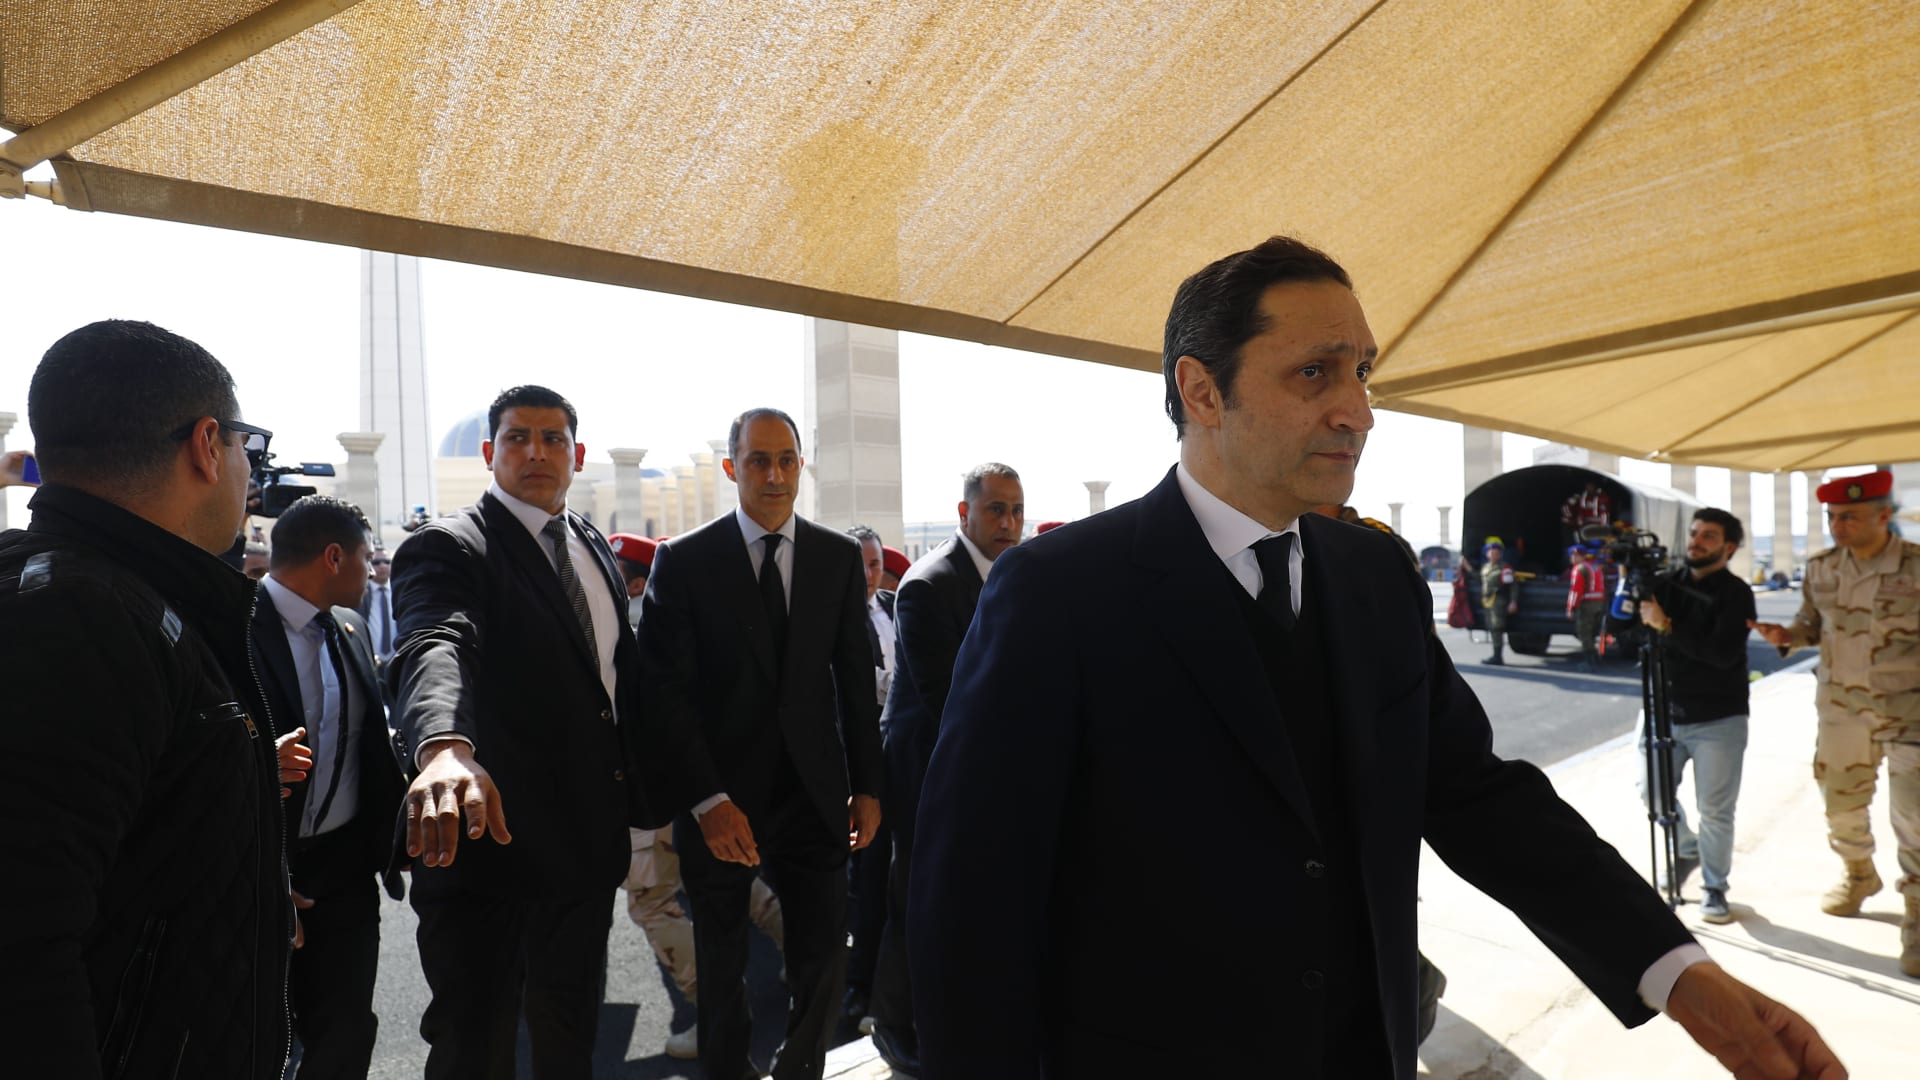 علاء مبارك يوجه انتقادات إلى عمرو أديب بعد إعلانه "وصيته"